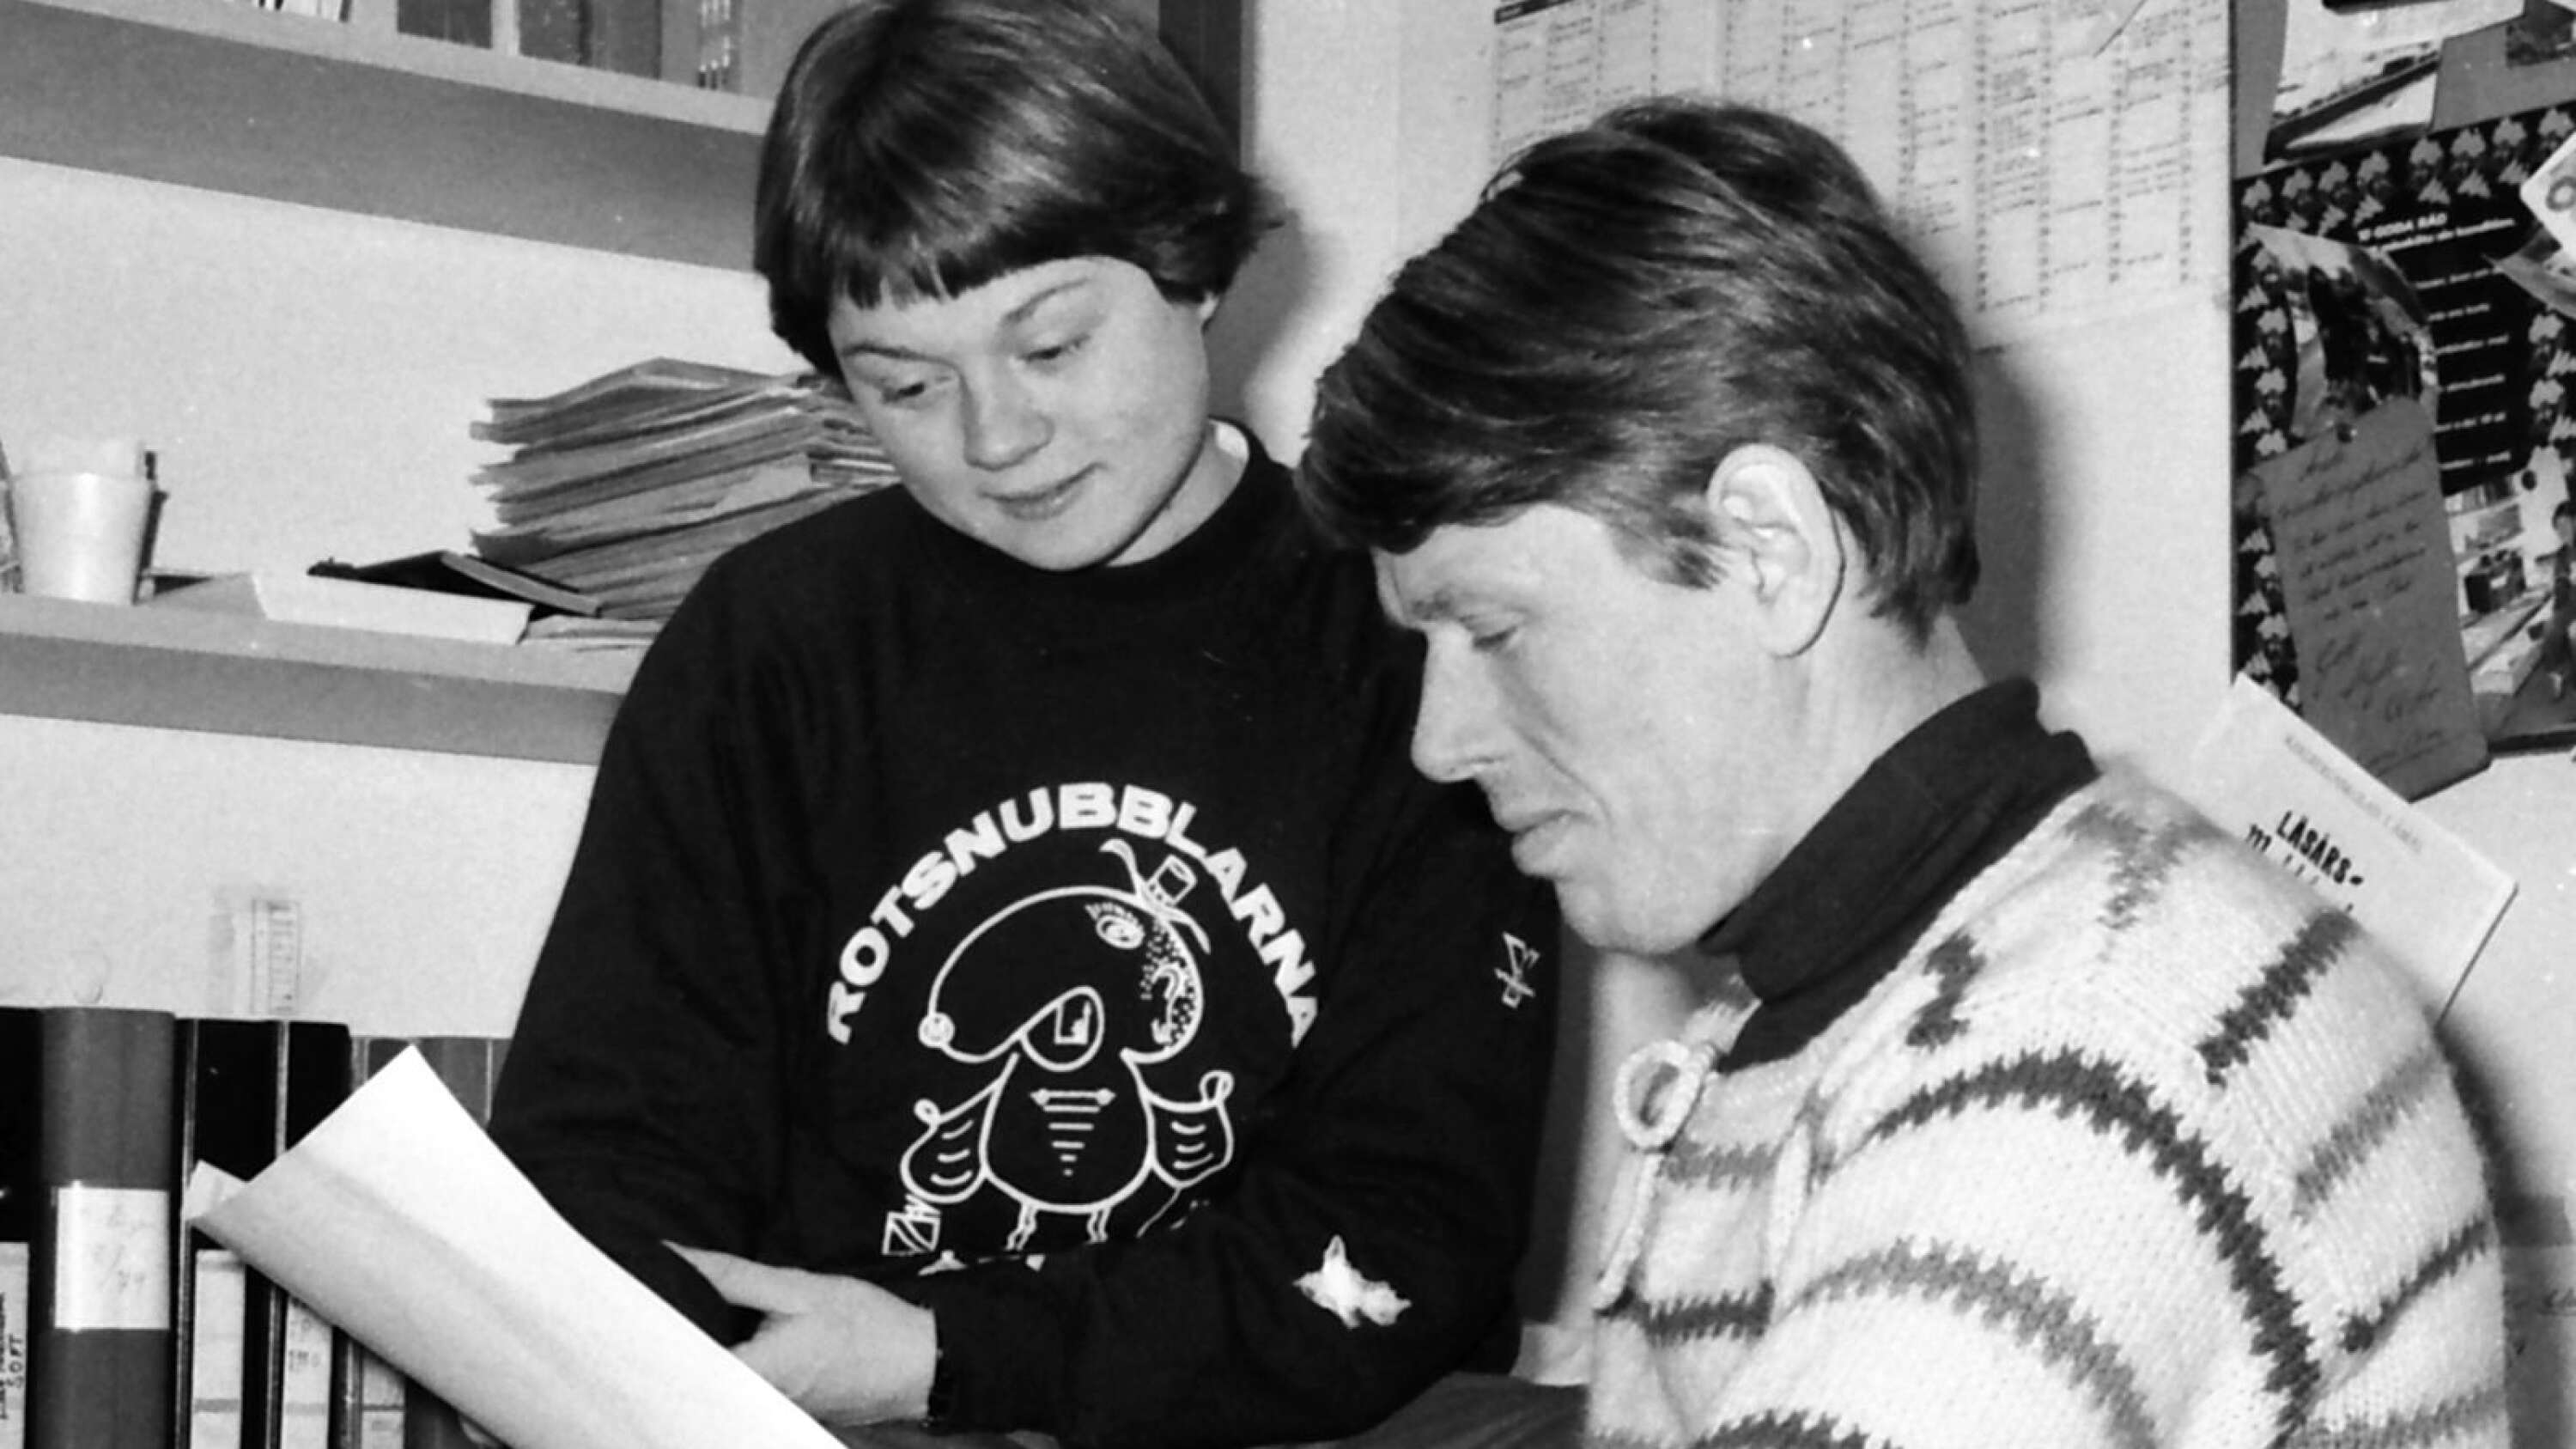 Annichen Kringstad fick redan 1978 ST:s guldplakett, men hade förstås nästan hela sin lysande idrottskarriär framför sig. Året därpå var hon instruktör på orienteringsgymnasiet i Åmål där Gustaf Wennberg var lärare. 